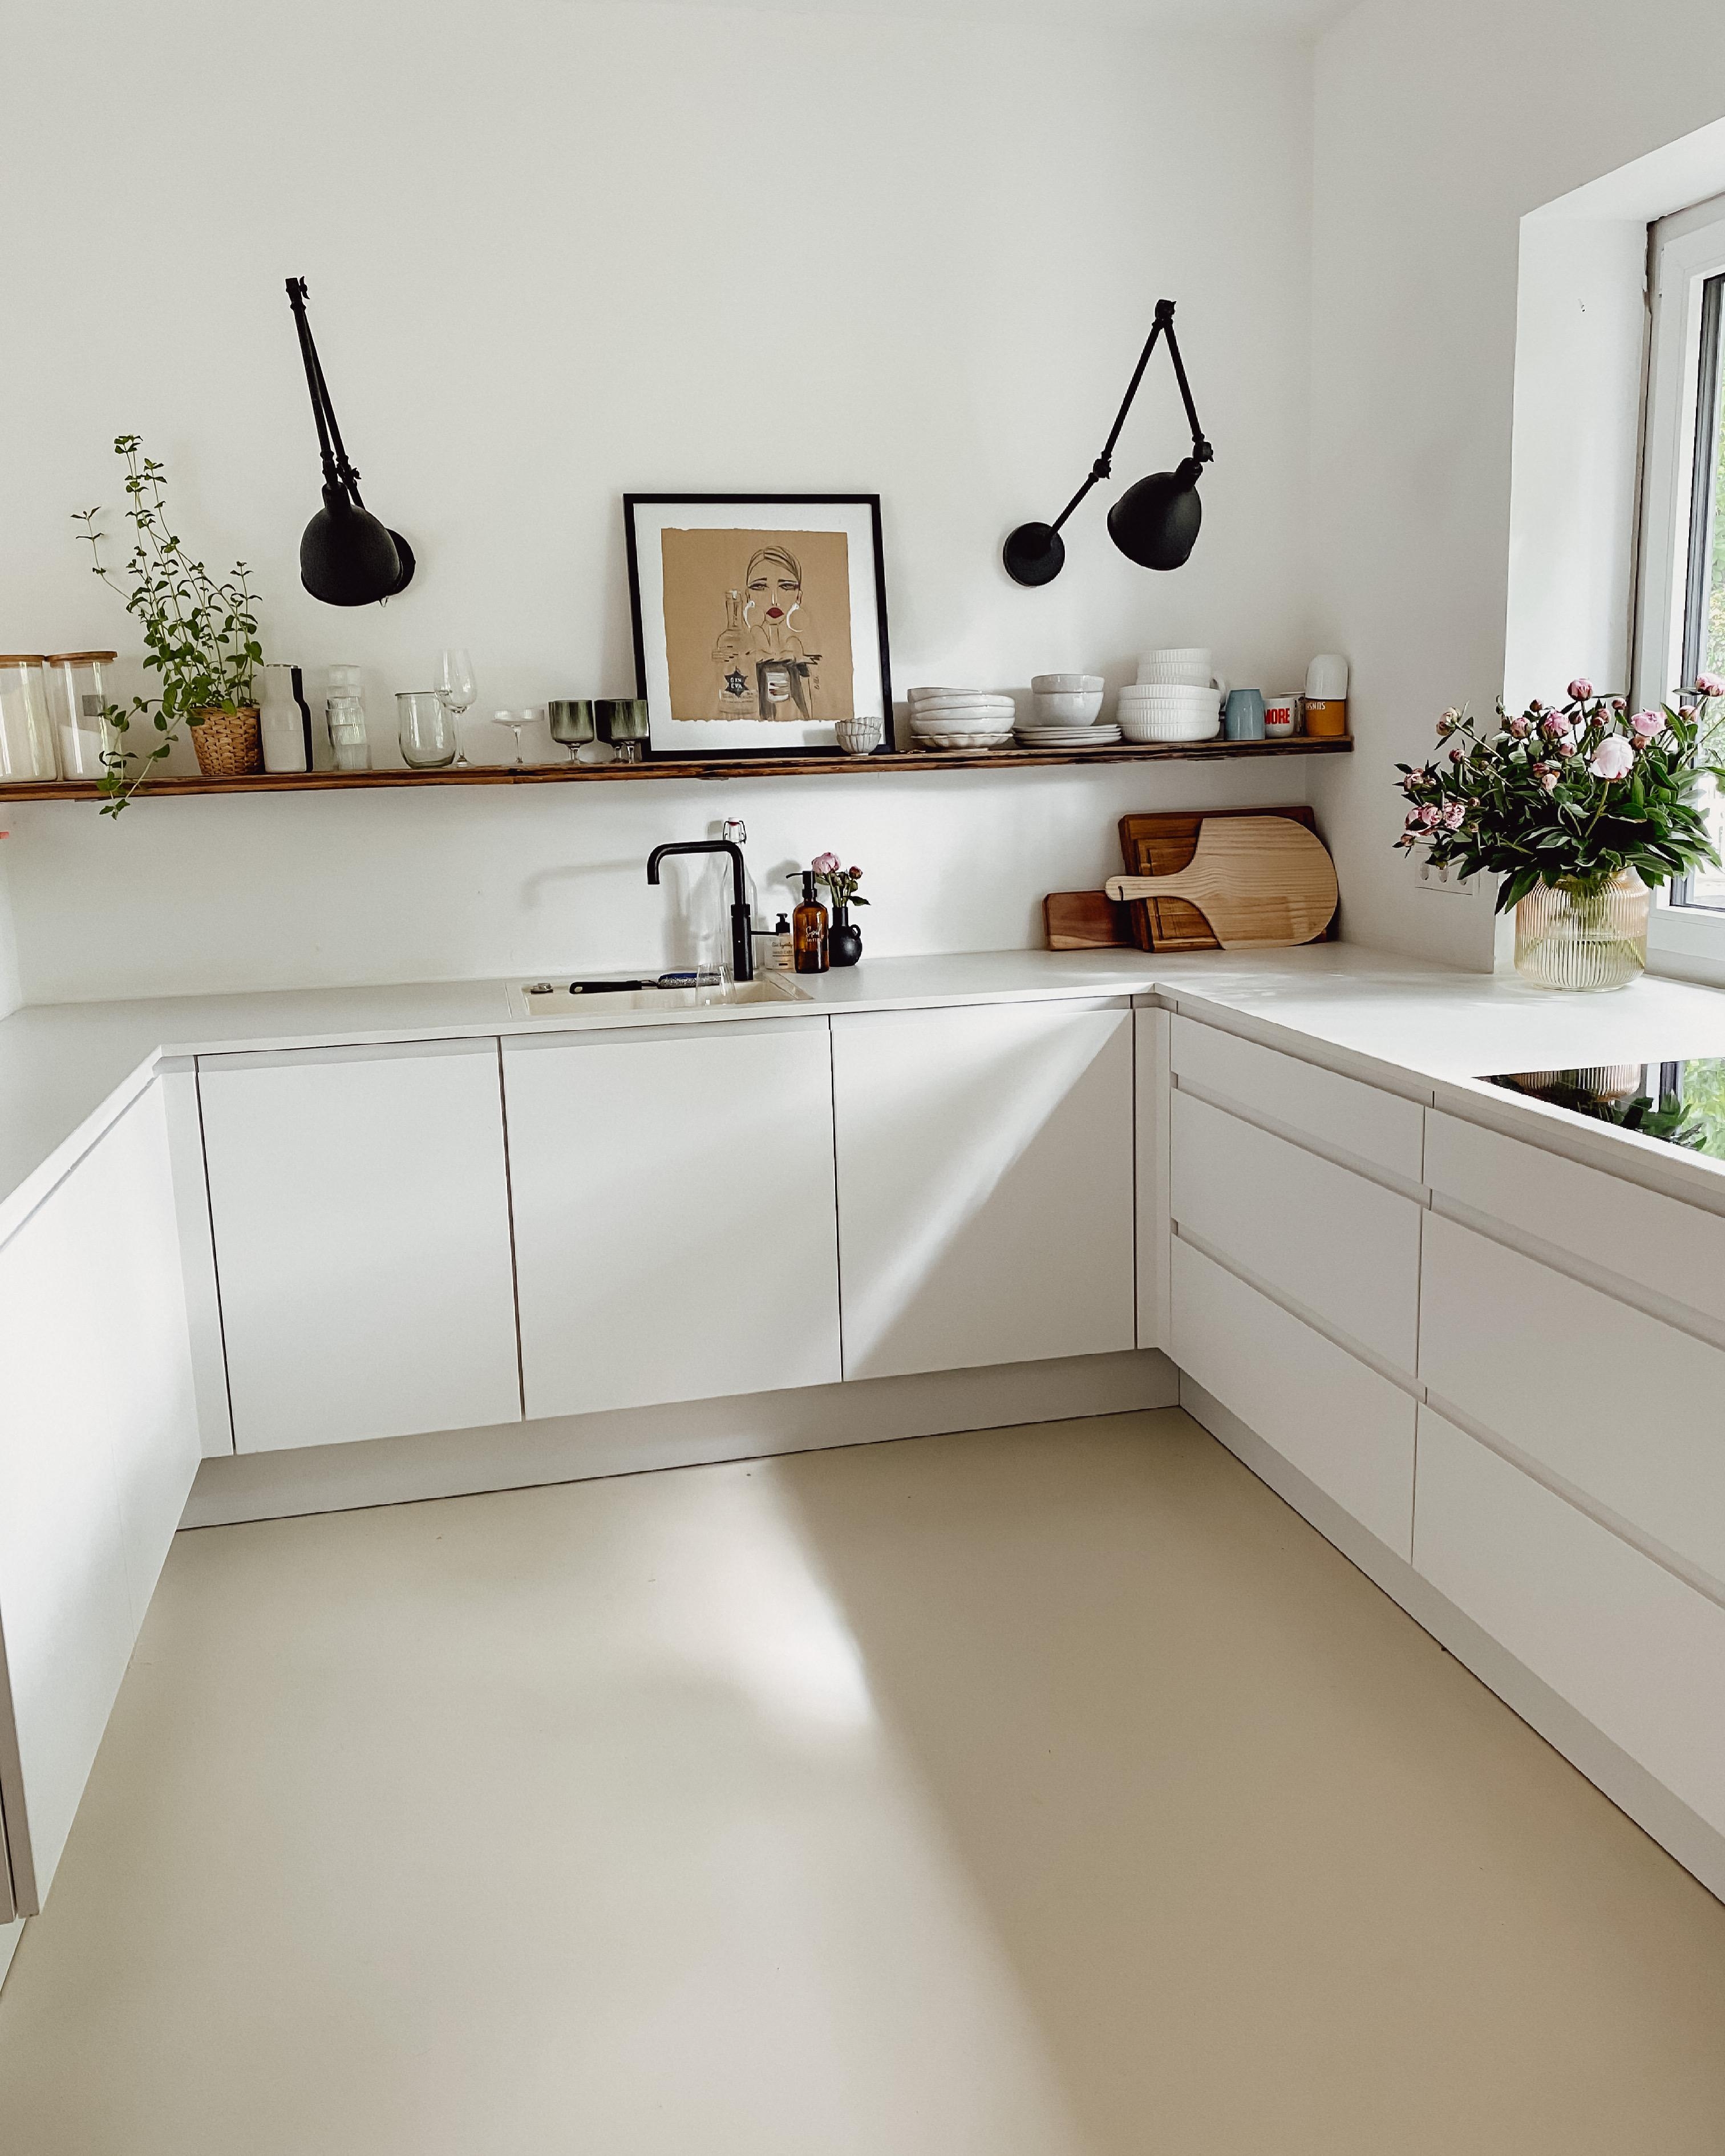 #offeneküche #weisseküche #gussboden #clean #minimalistic #whiteliving #küche